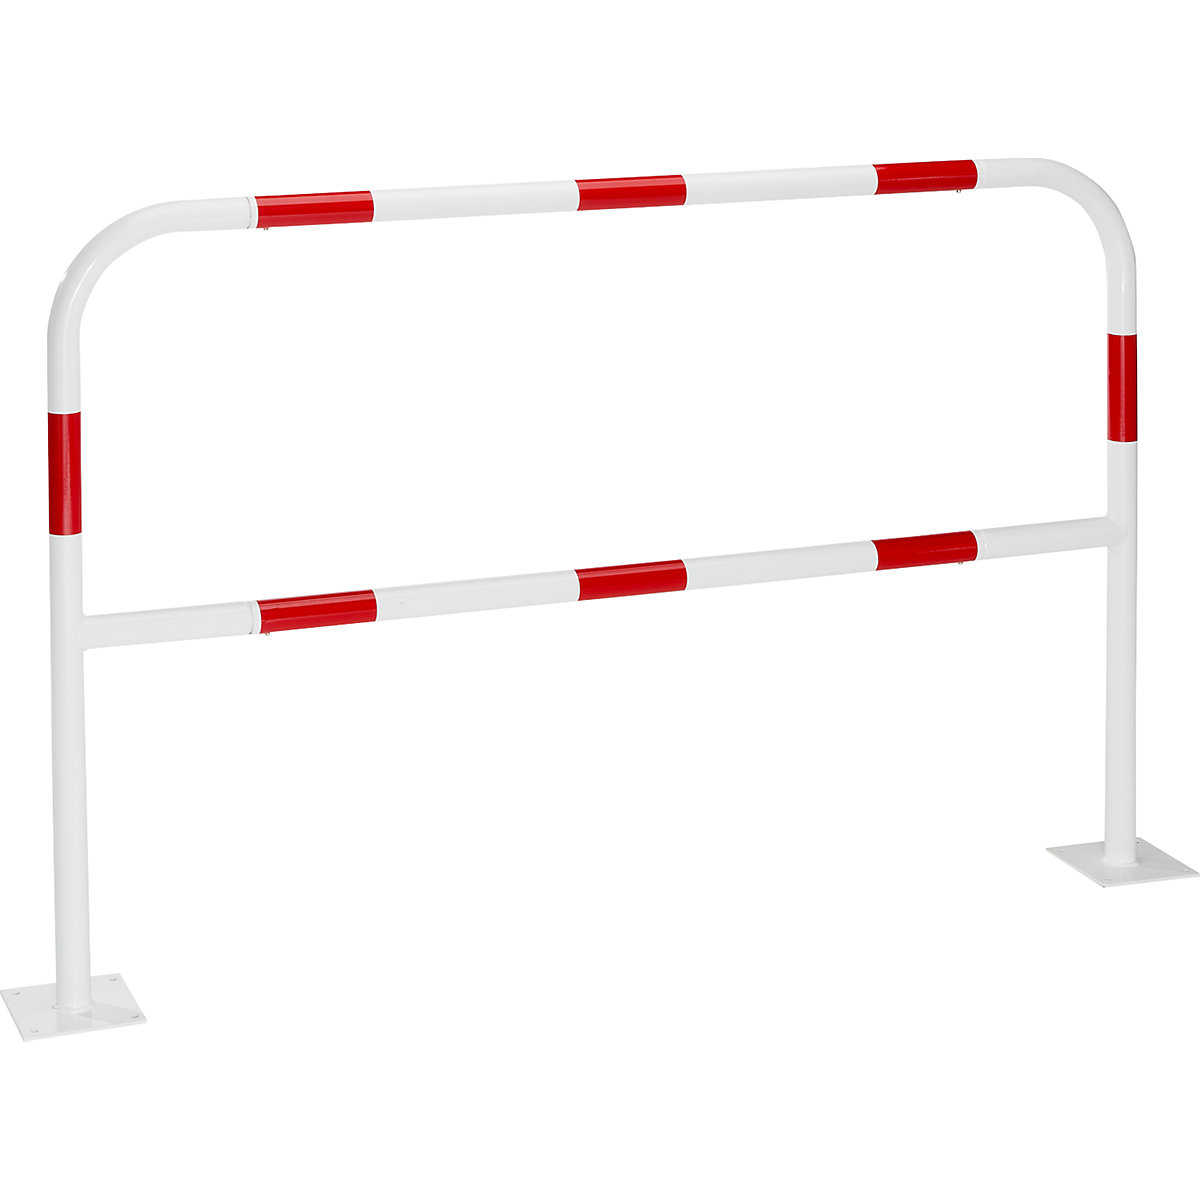 Arceau de sécurité pour zones dangereuses, à cheviller, rouge/blanc, largeur 1500 mm-5